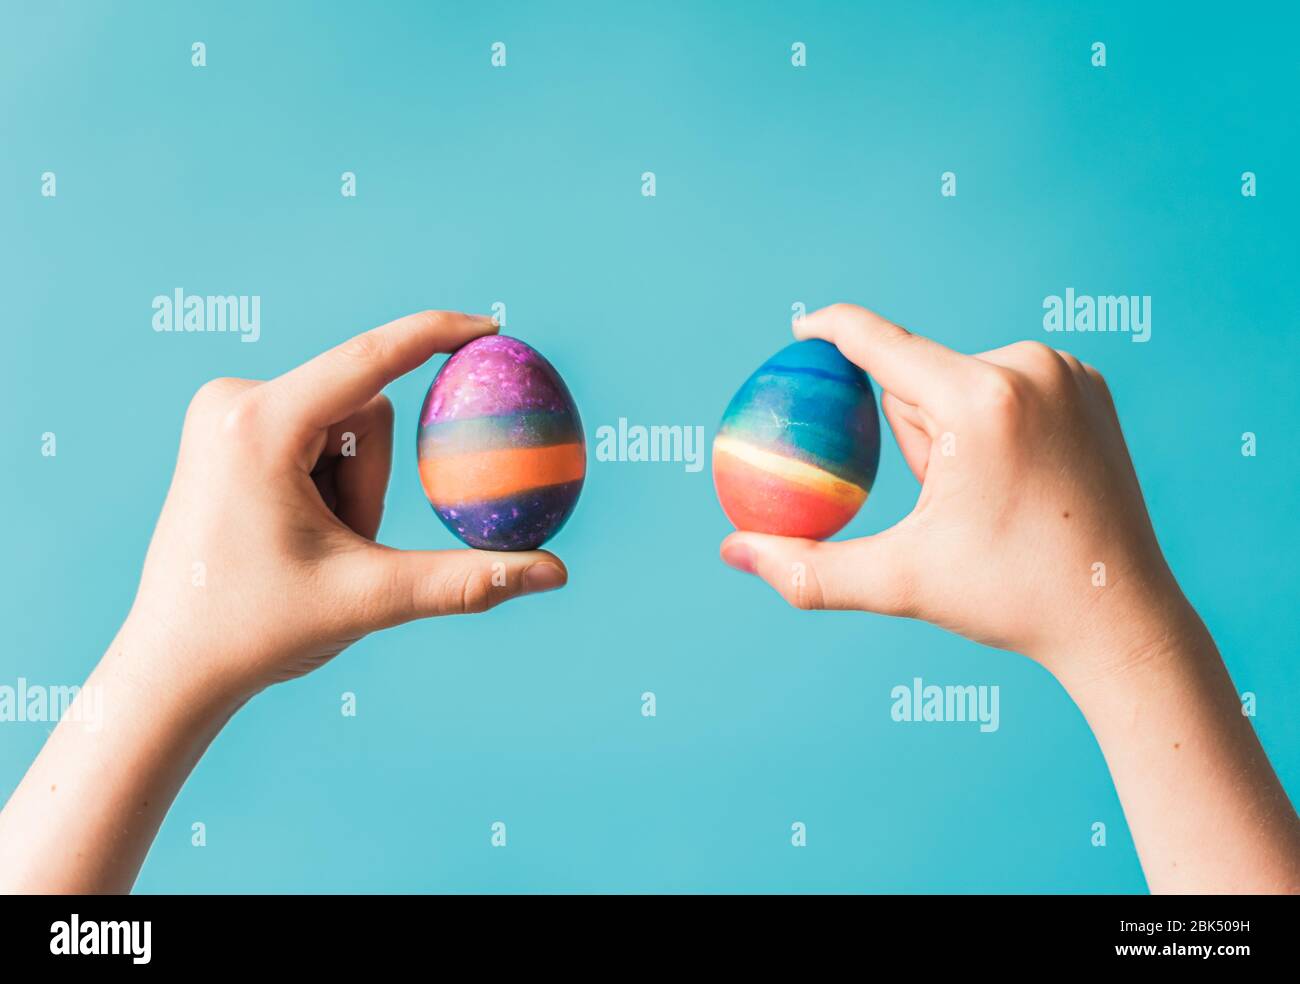 Manos sosteniendo dos huevos de Pascua de colores brillantes contra fondo azul. Foto de stock